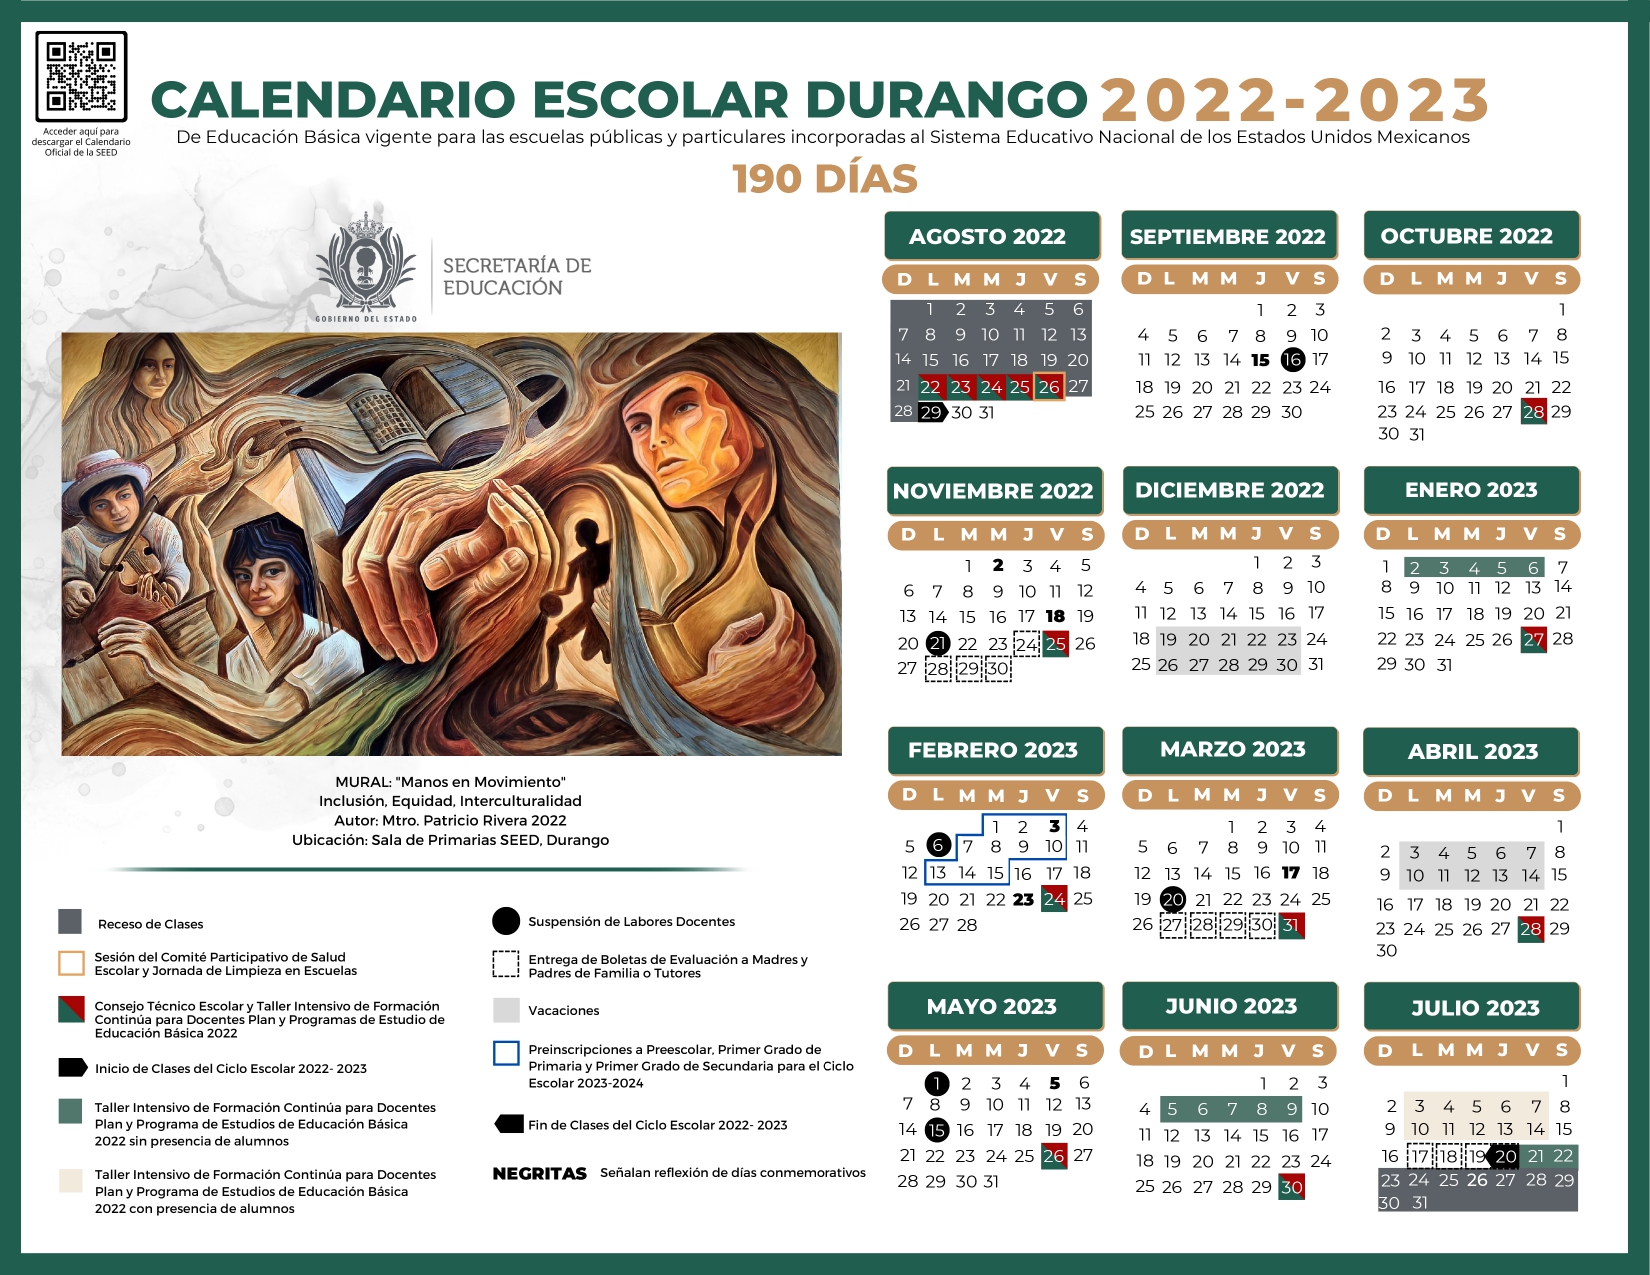 Publican calendario escolar 20222023 en Durango, ajustan fecha de fin